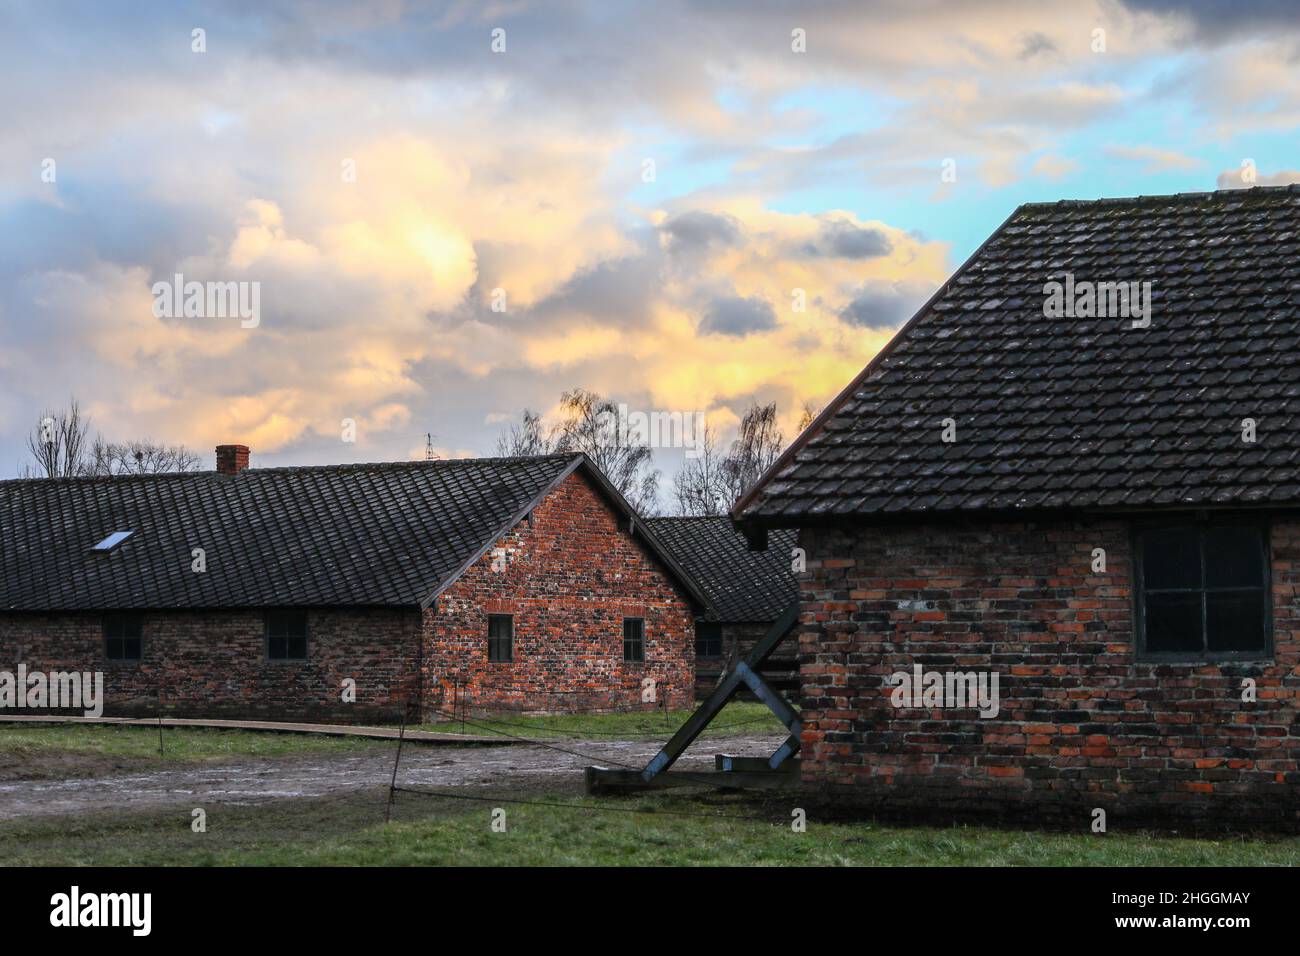 Caserme presso l'ex campo di concentramento e sterminio nazista di Auschwitz II-Birkenau a Oswiecim, in Polonia, il 3 gennaio 2022. Foto Stock